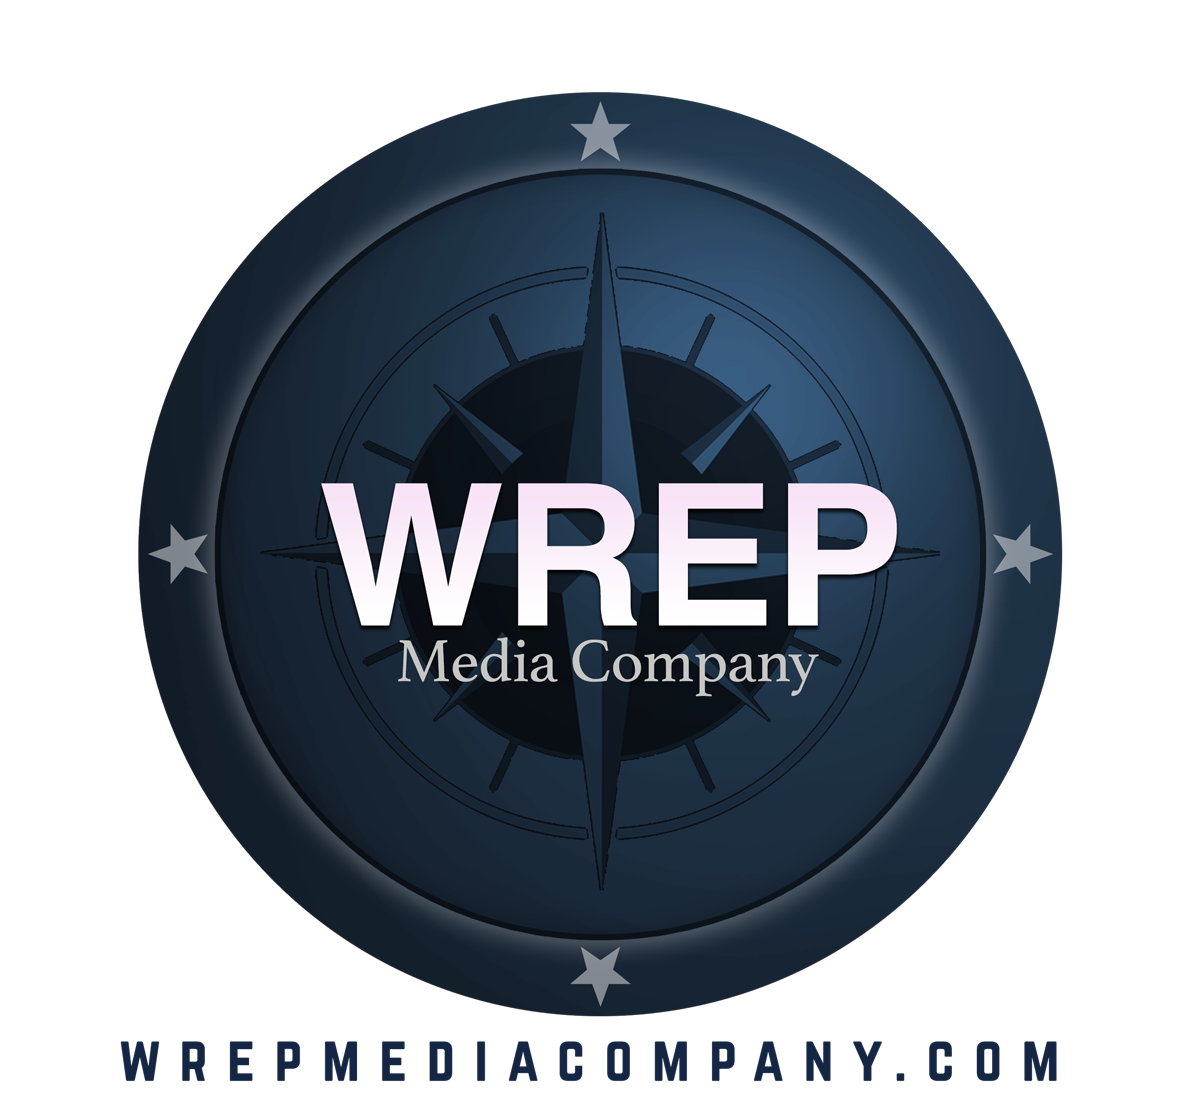 Wrep Media Company